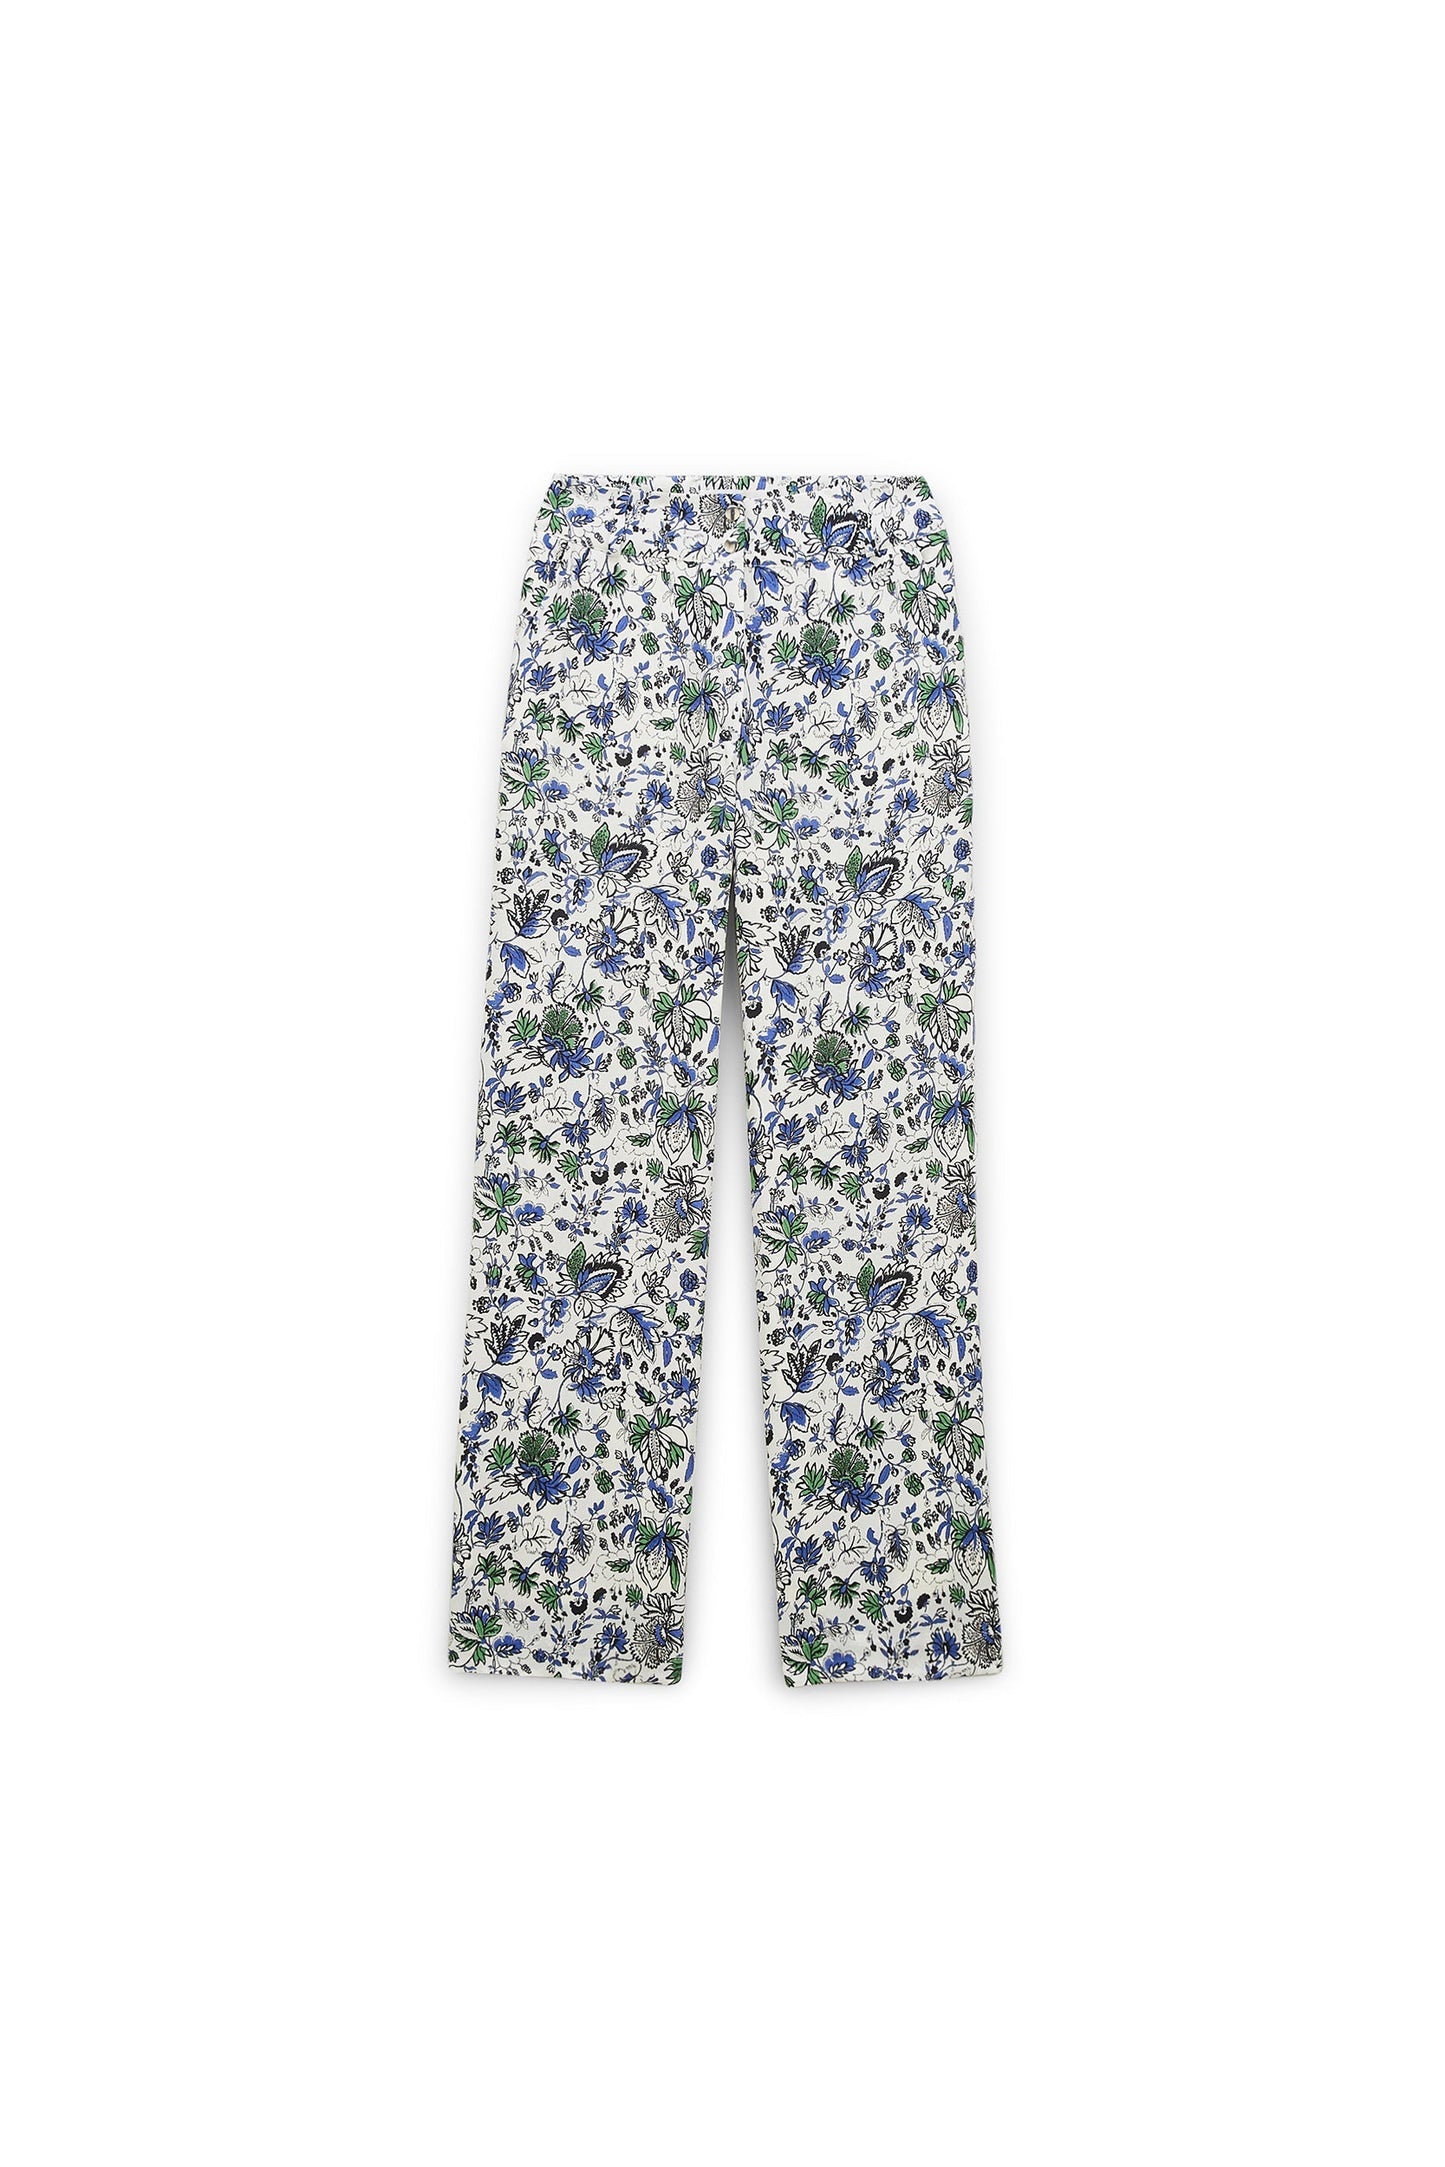 blooming garden crocus pants